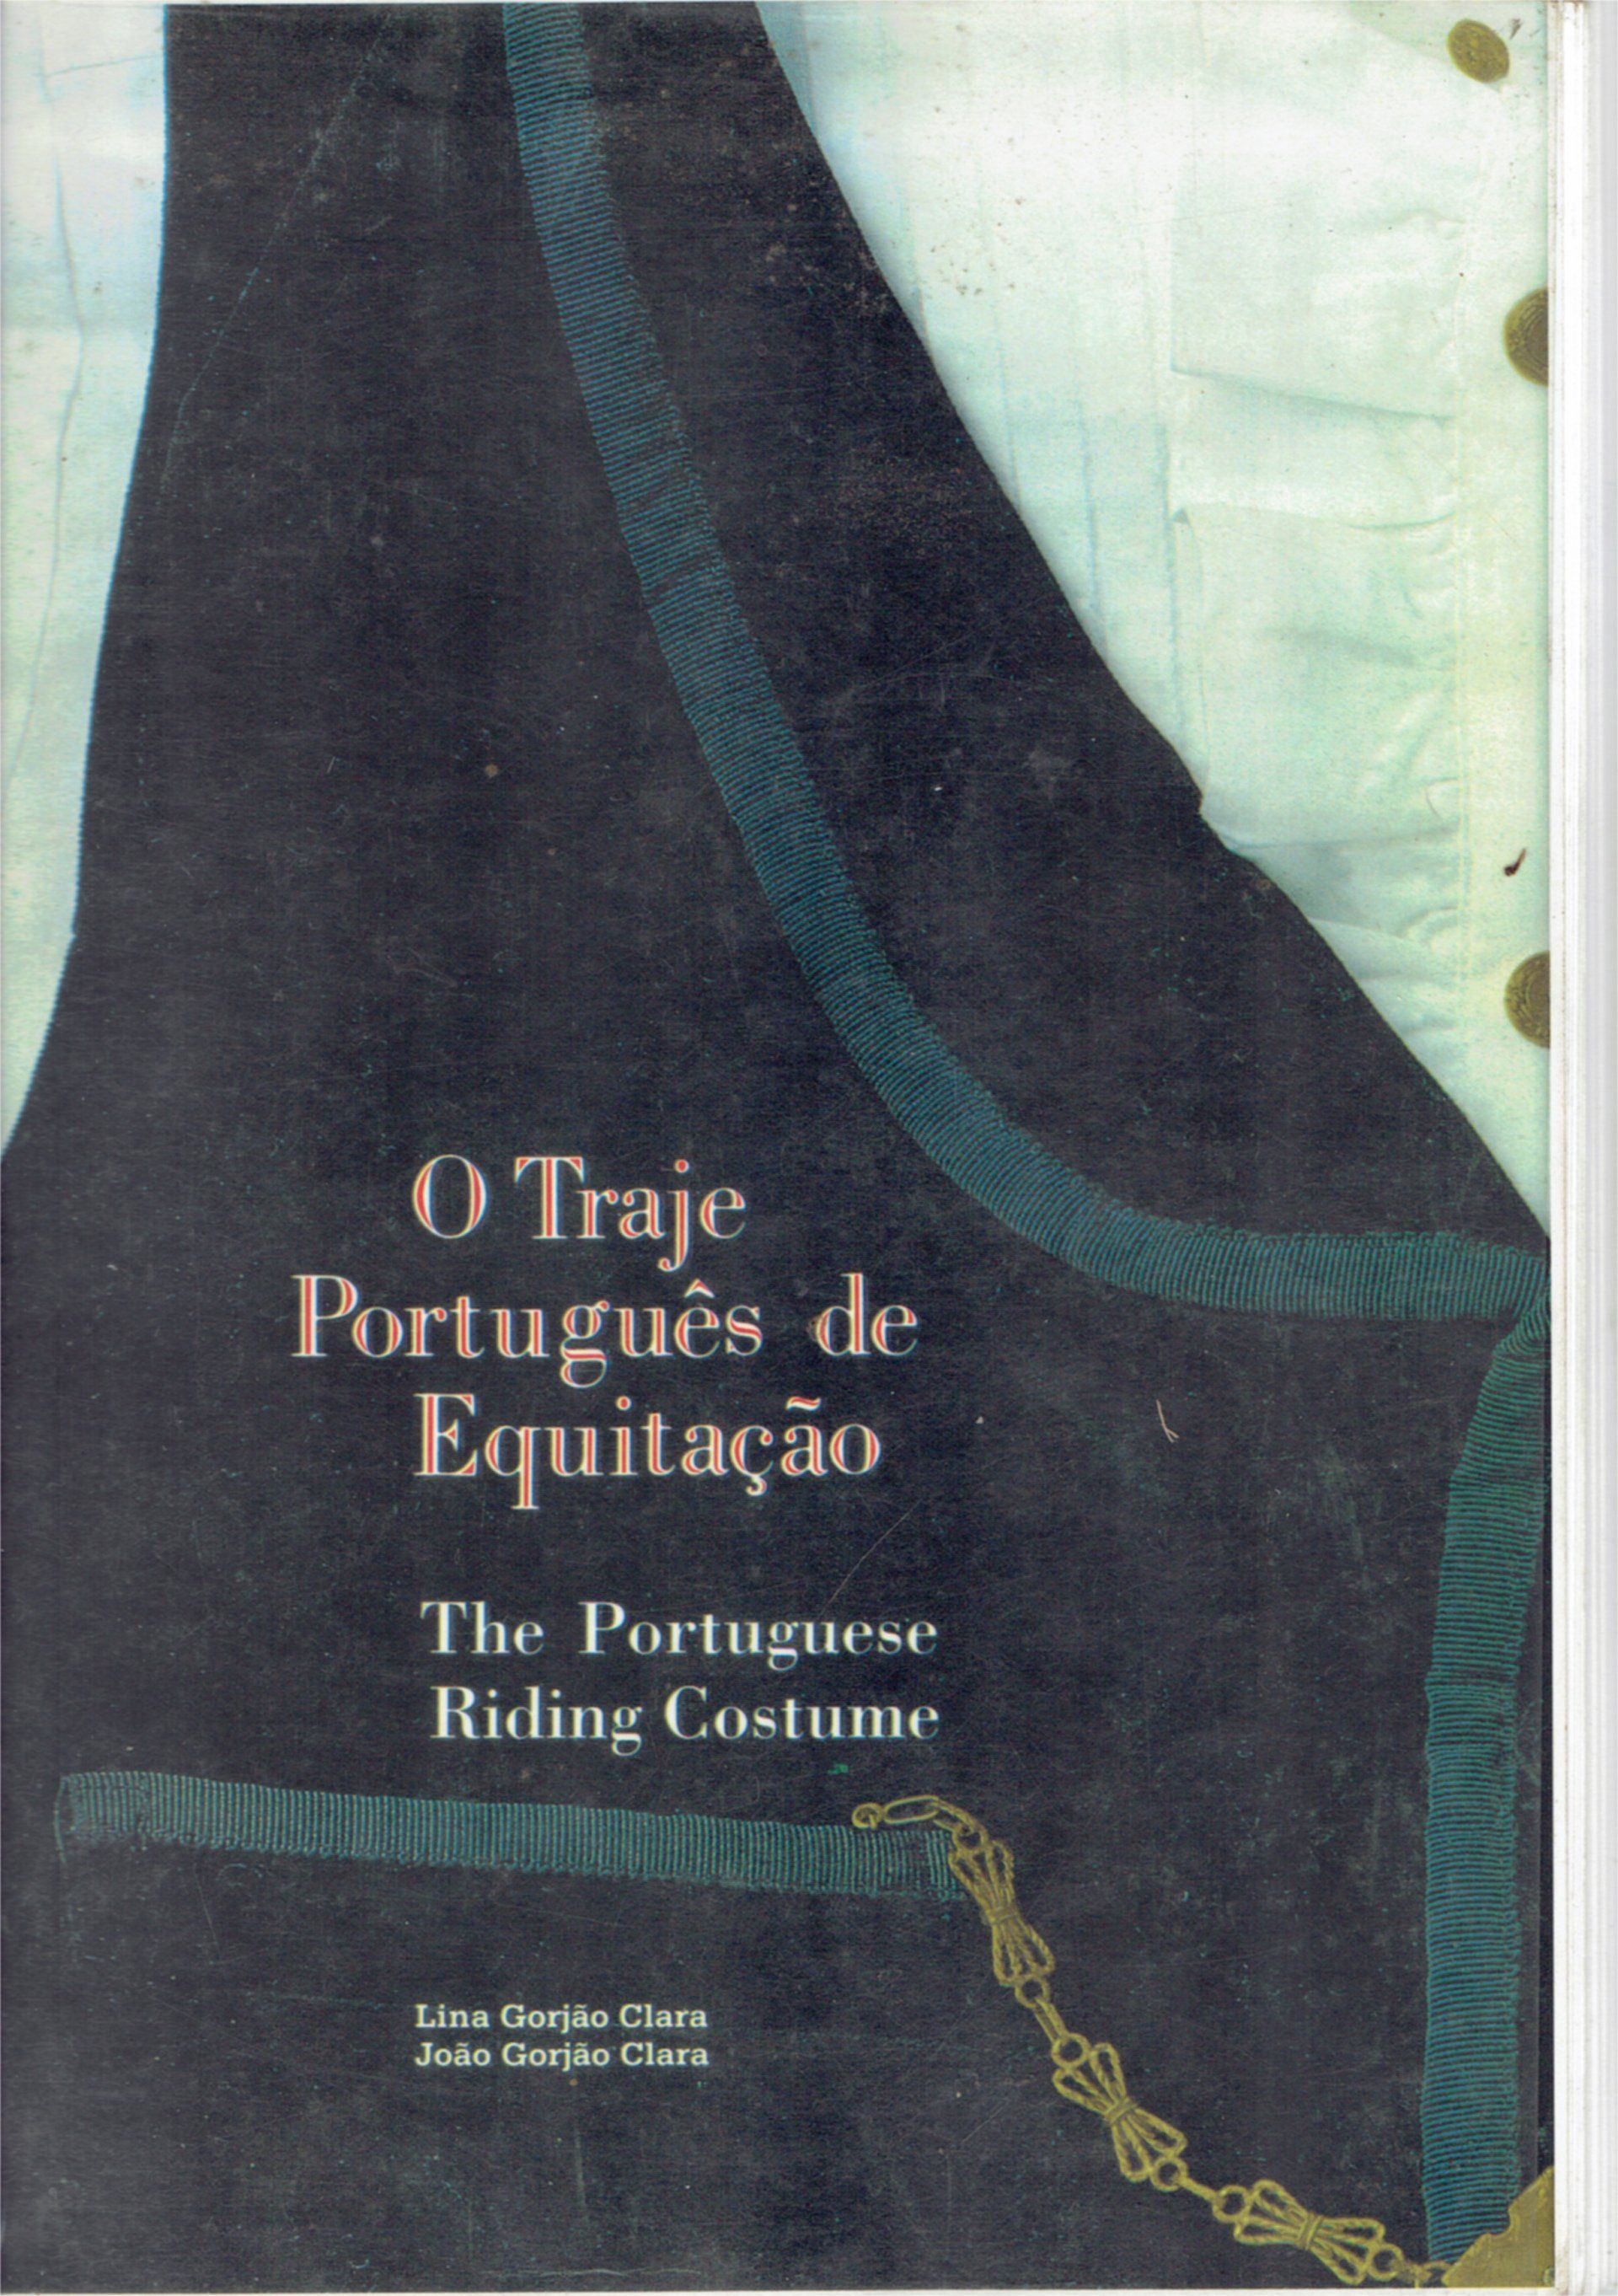 Book: Portuguese Riding Costume, the definitive O Traje Português de Equitação